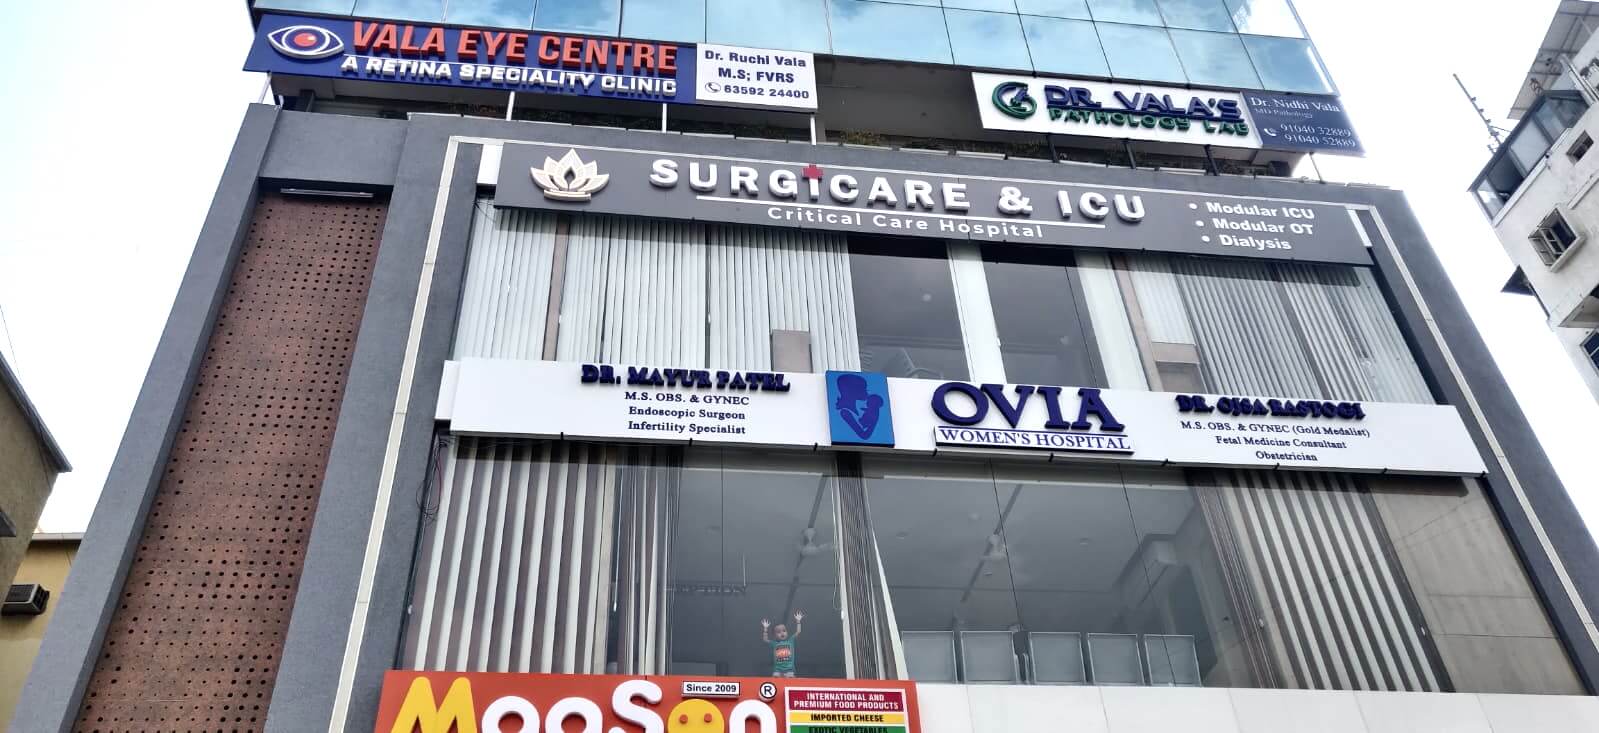 Surgicare & ICU Vadodara Hospital for Surgery